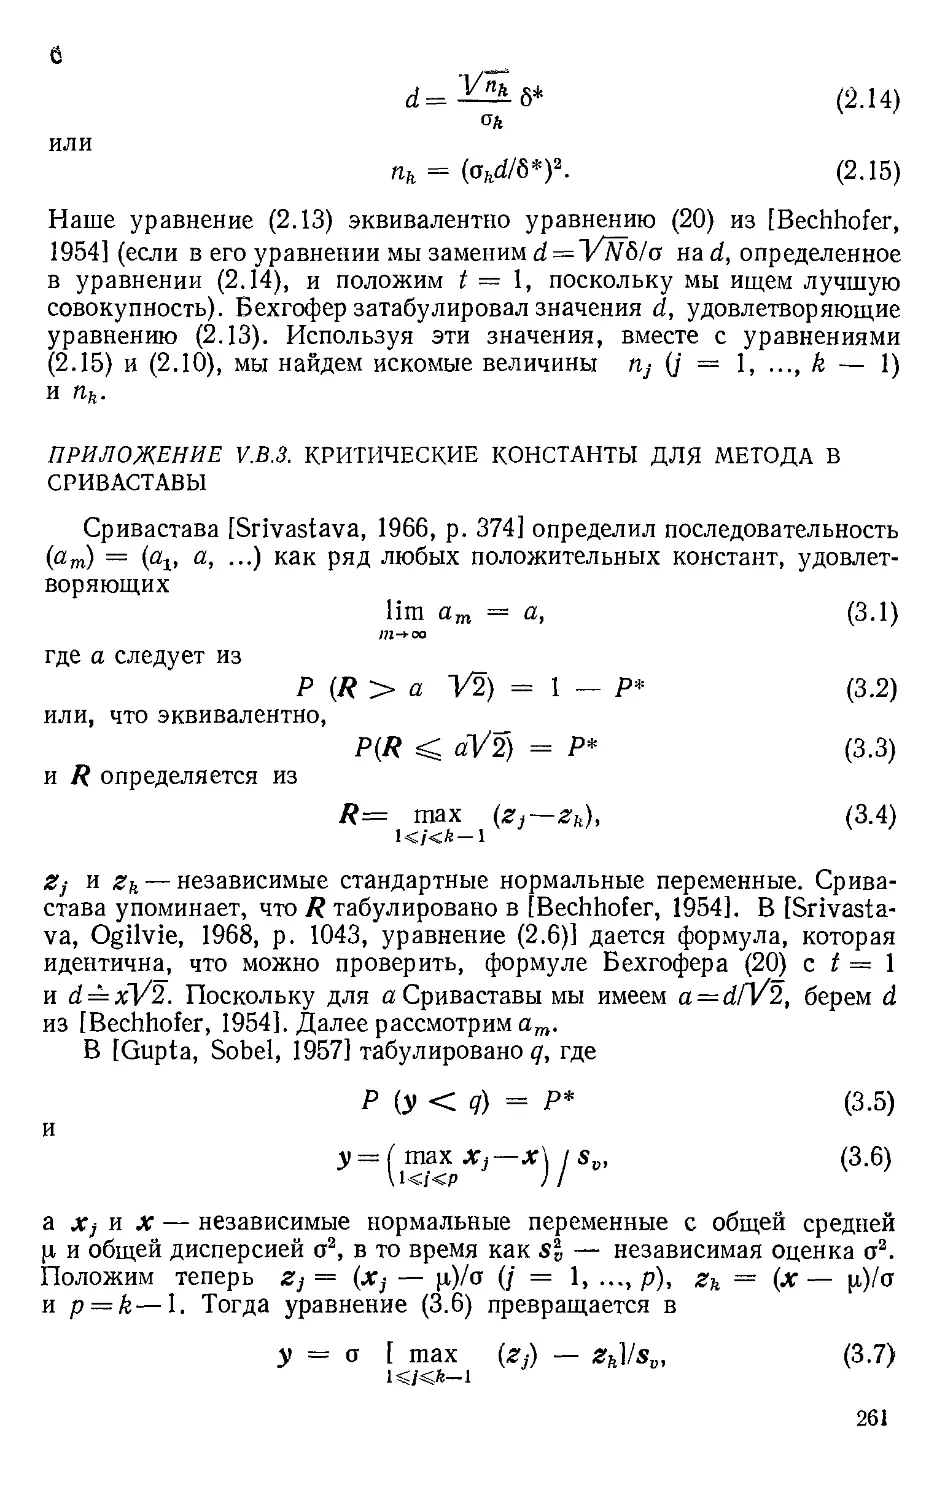 Приложение V.B.3. Критические константы для метода В Сриваставы